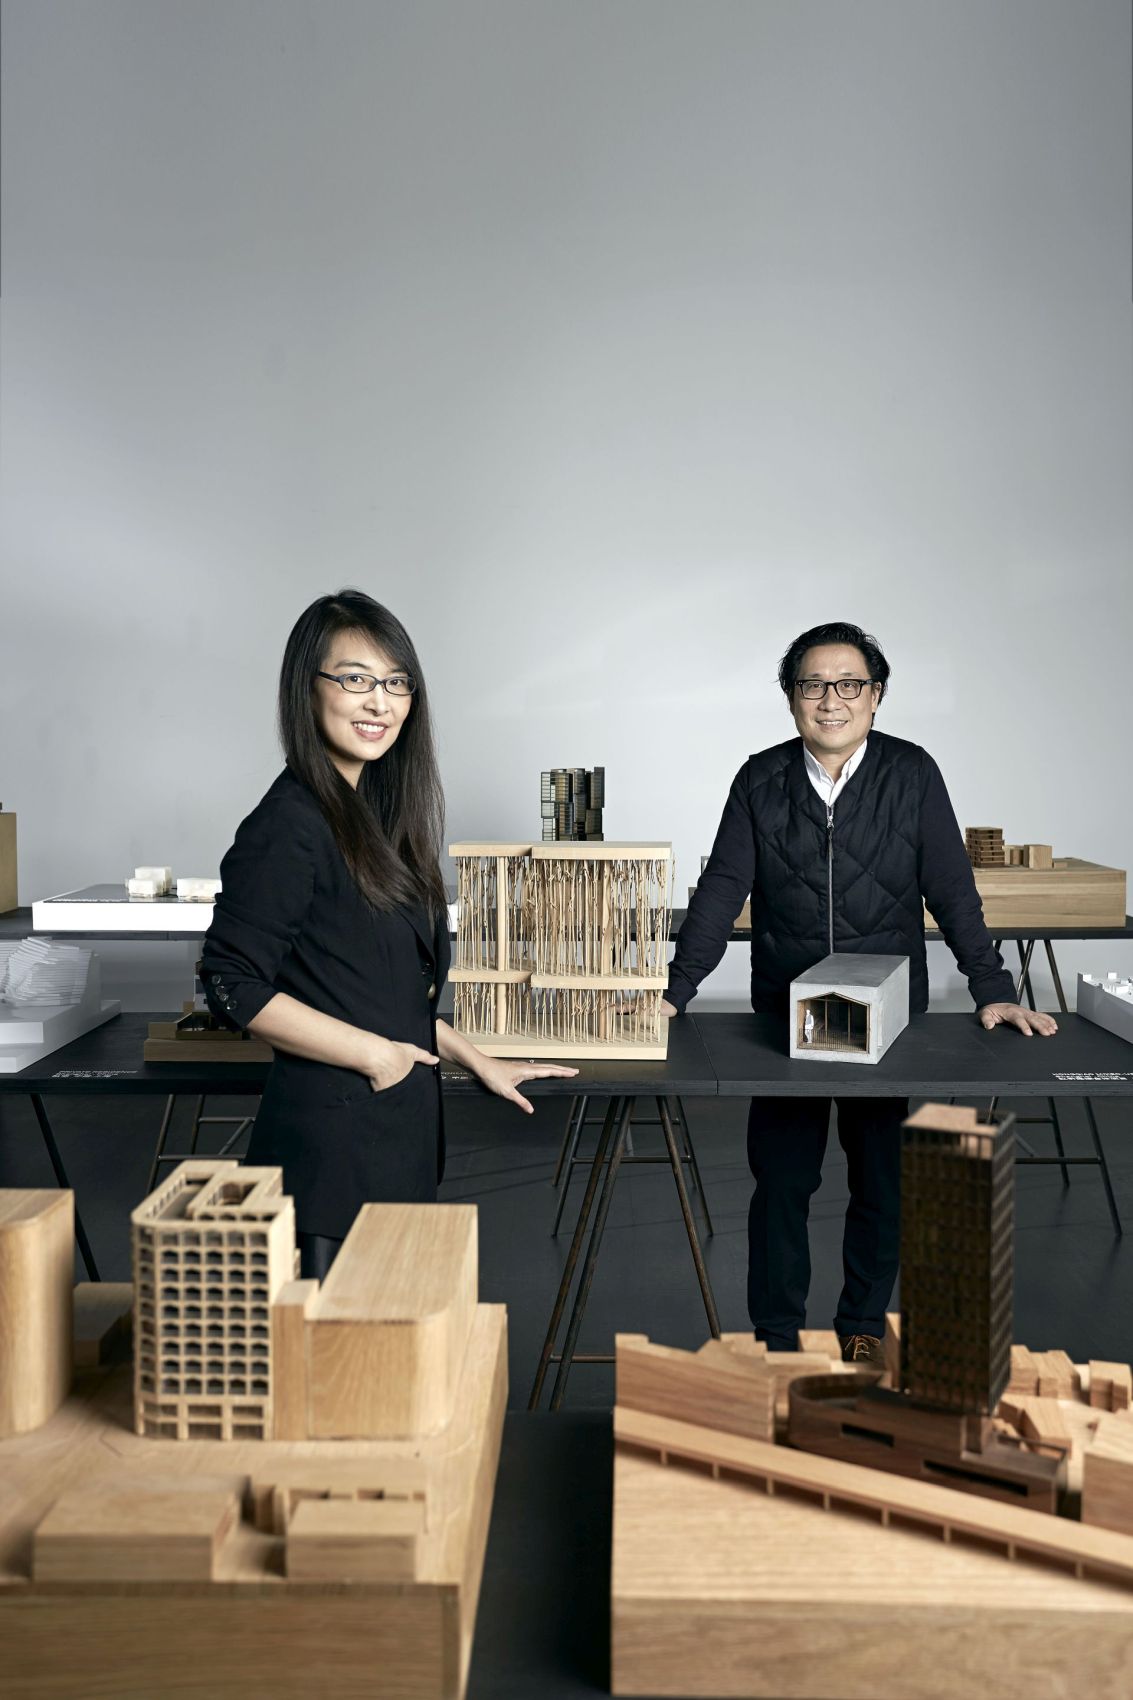 Lyndon Neri i Rossana Hu, fot. Zhu Hai (źródło: materiały prasowe organizatora)